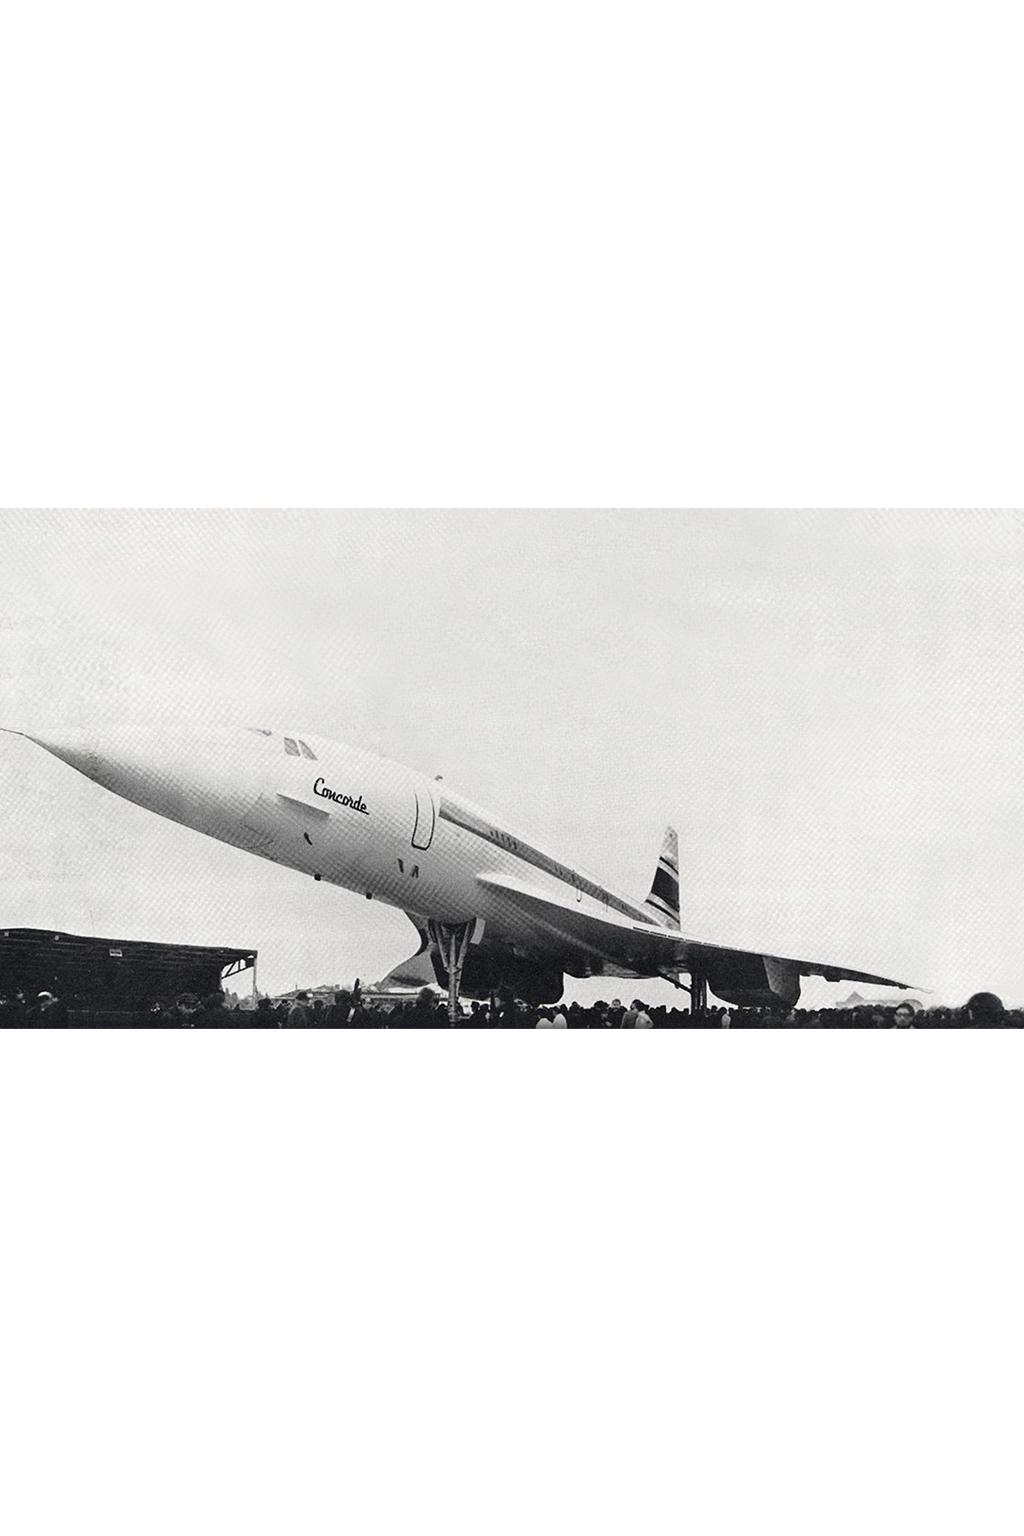 Universo do GMT-Master II LUXO SUPERSÔNICO Depois de realizados os últimos voos experimentais com o Concorde, na década de 1960, a Rolex teve o orgulho de anunciar que tanto o